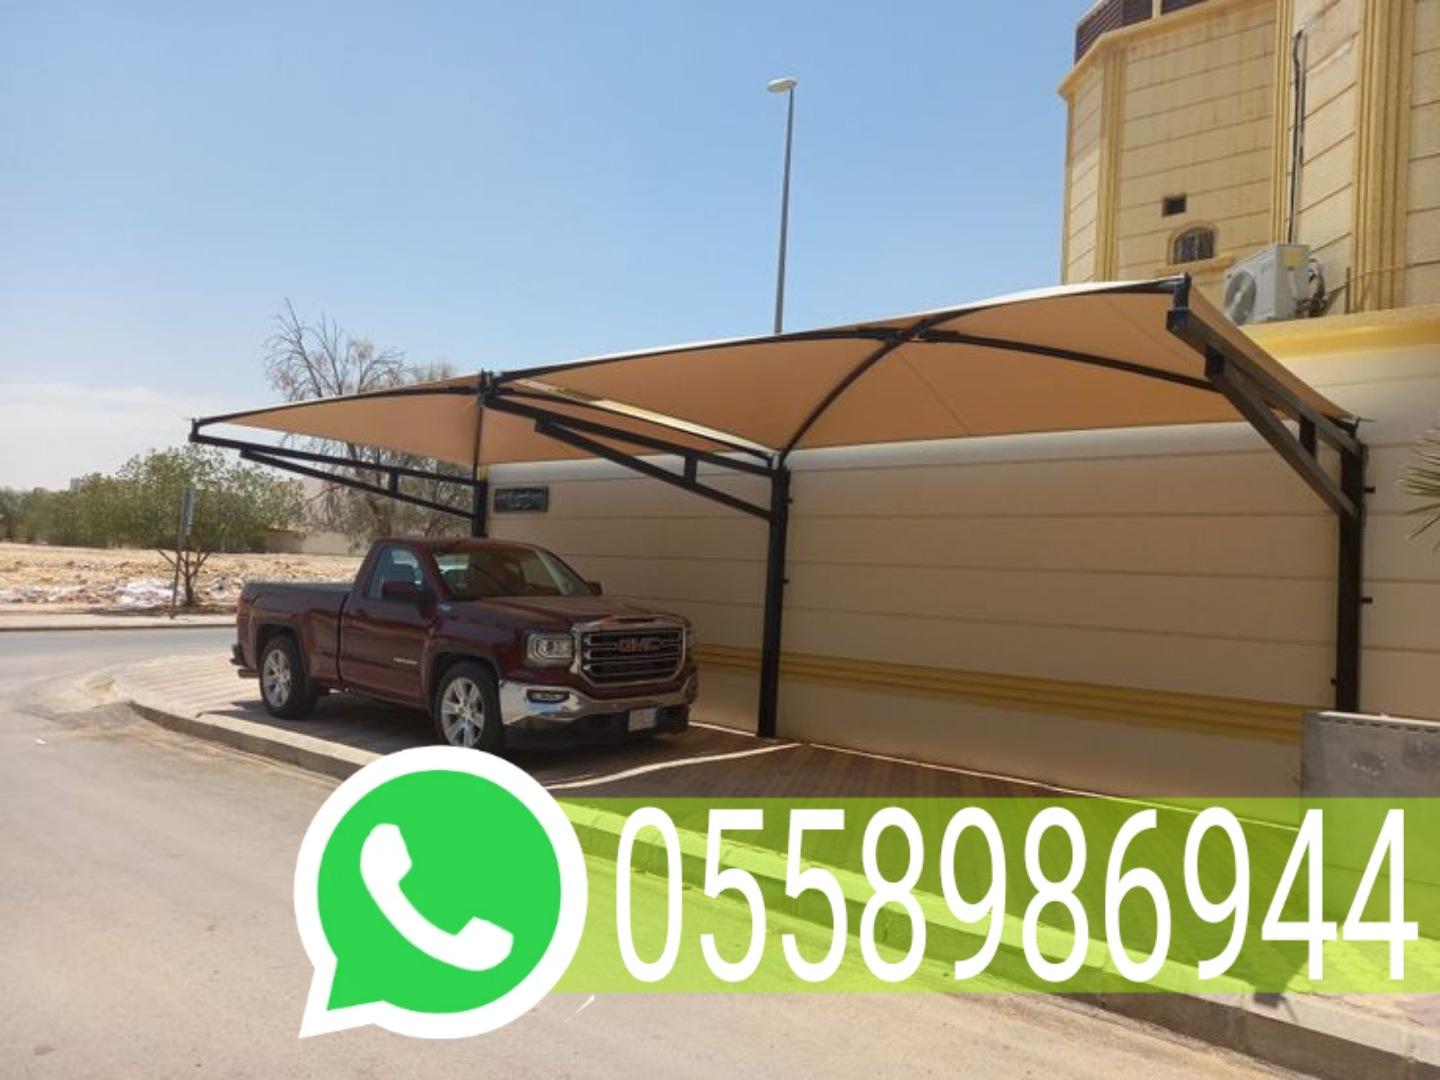 تركيب - تركيب مظلات كابولي في مكة المكرمة جوال 0558986944 934866970